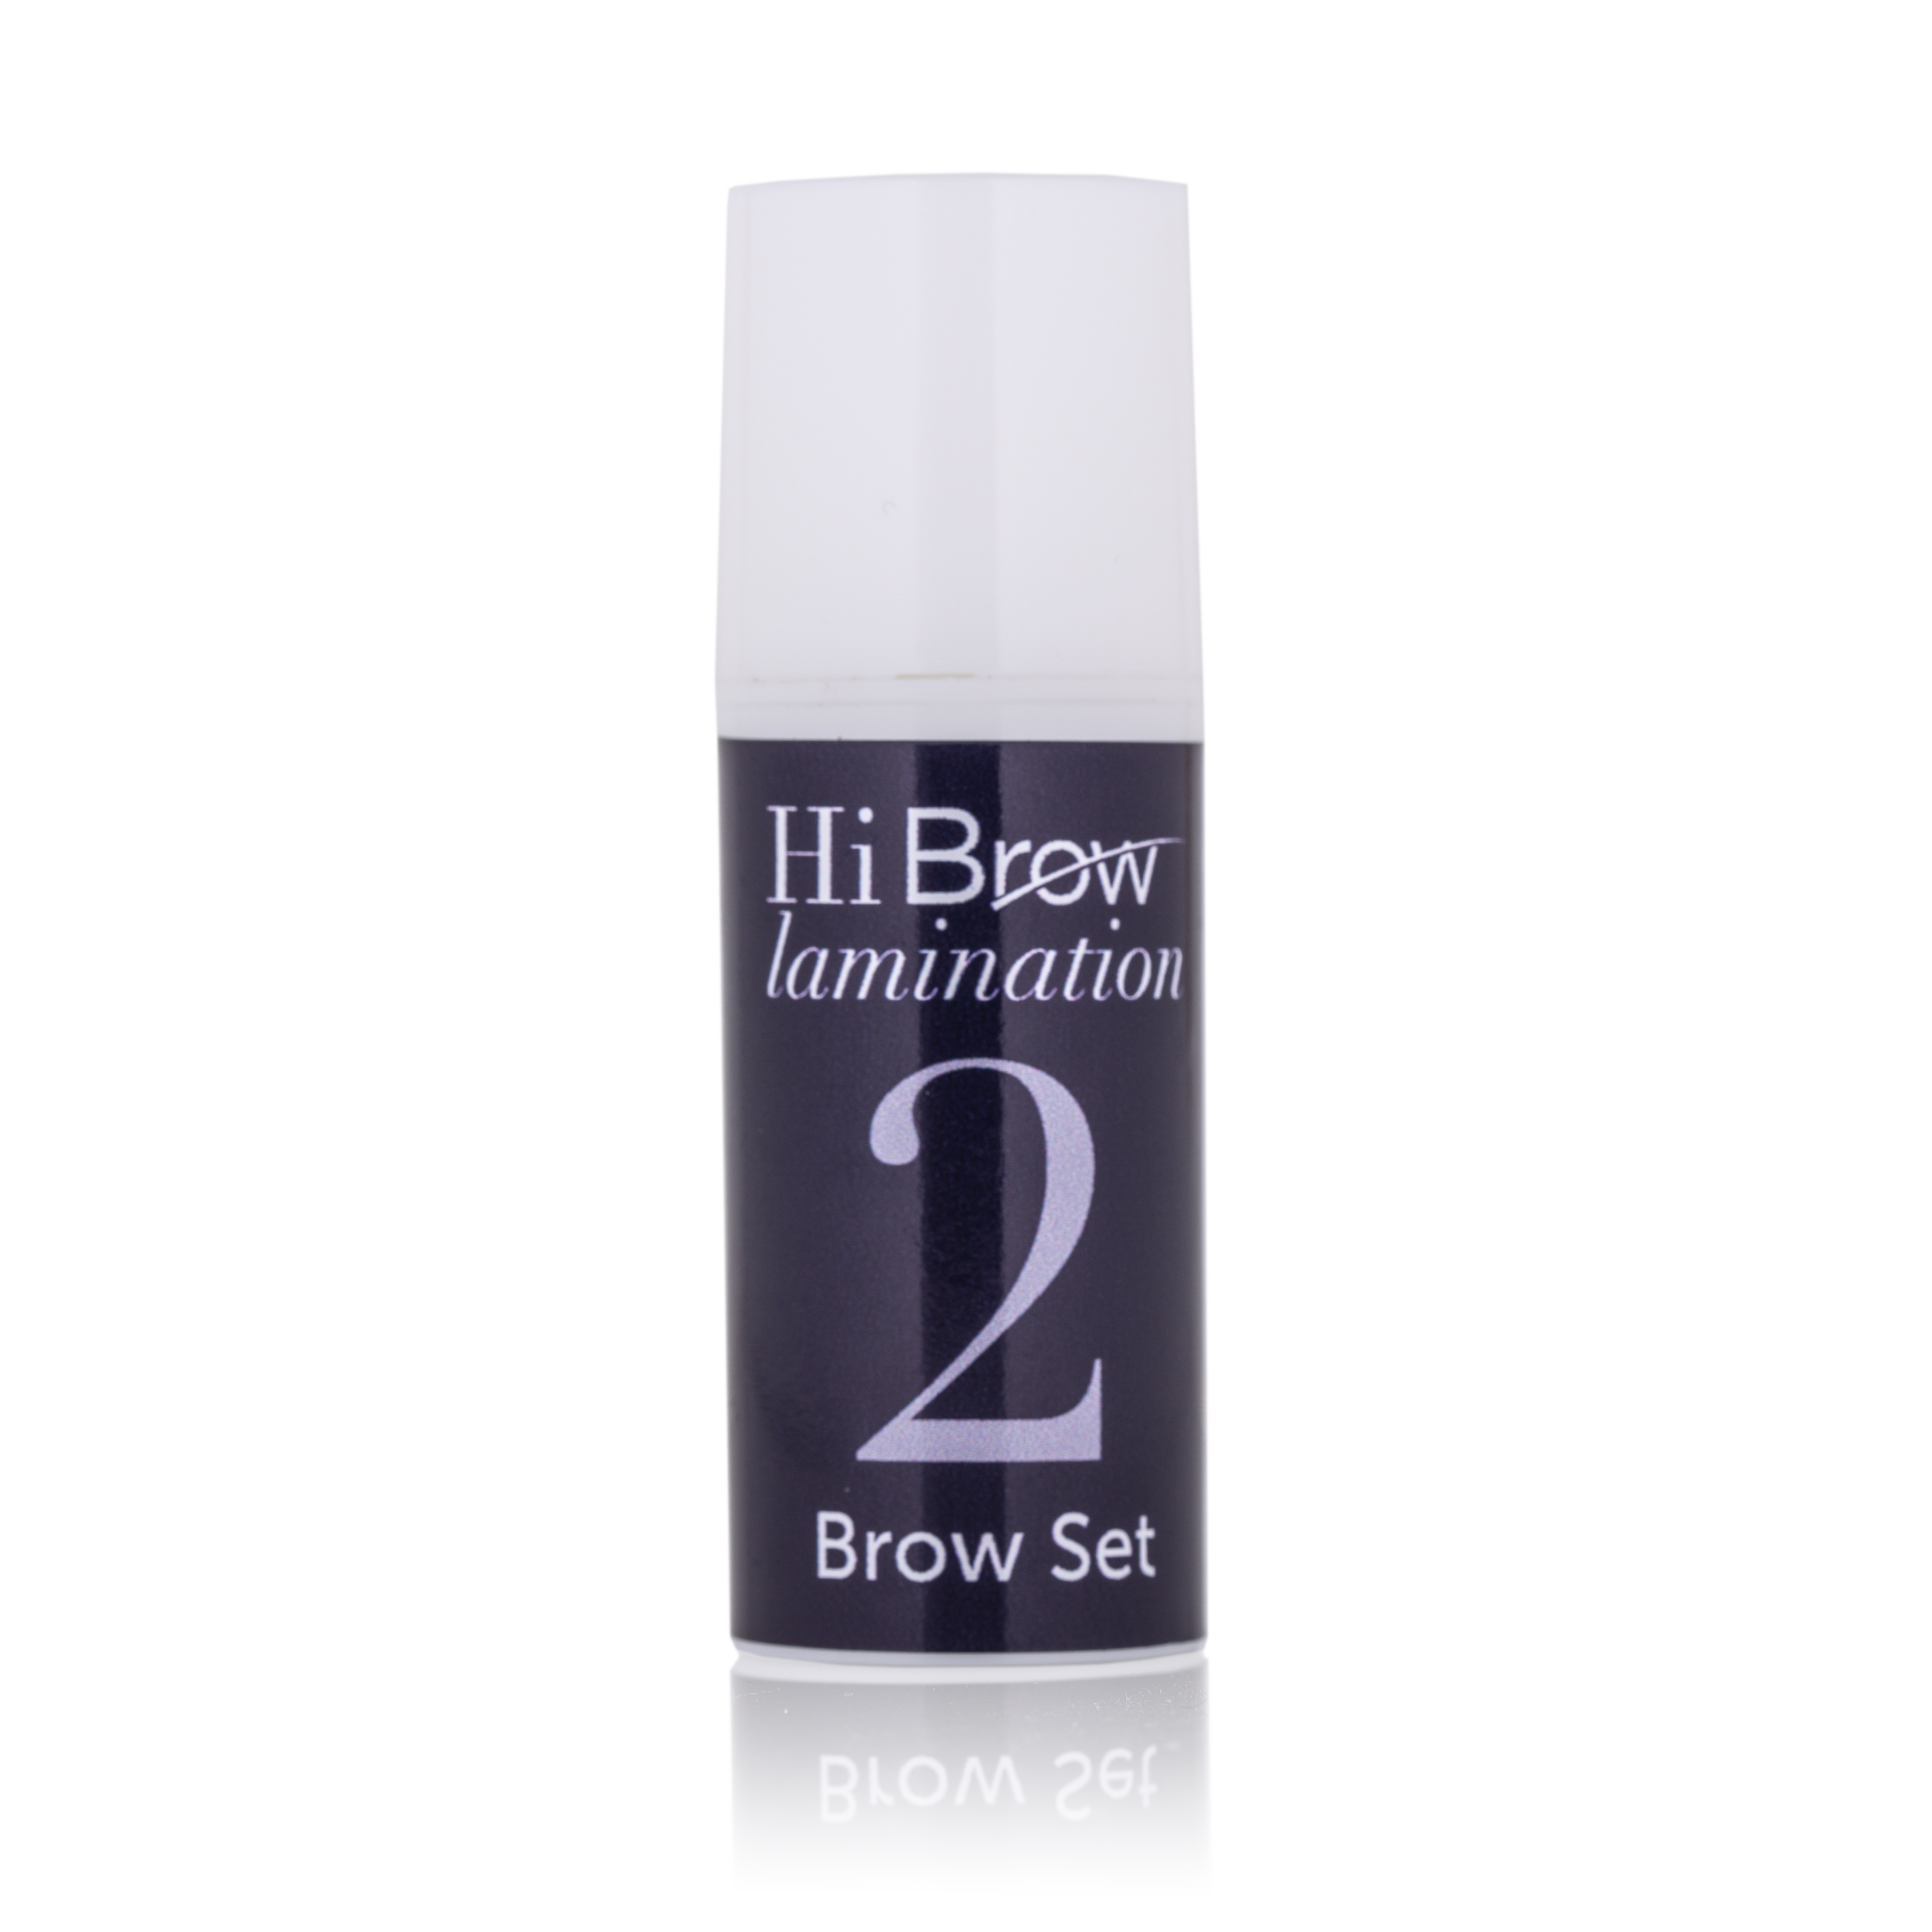 Hi Brow Brow Set